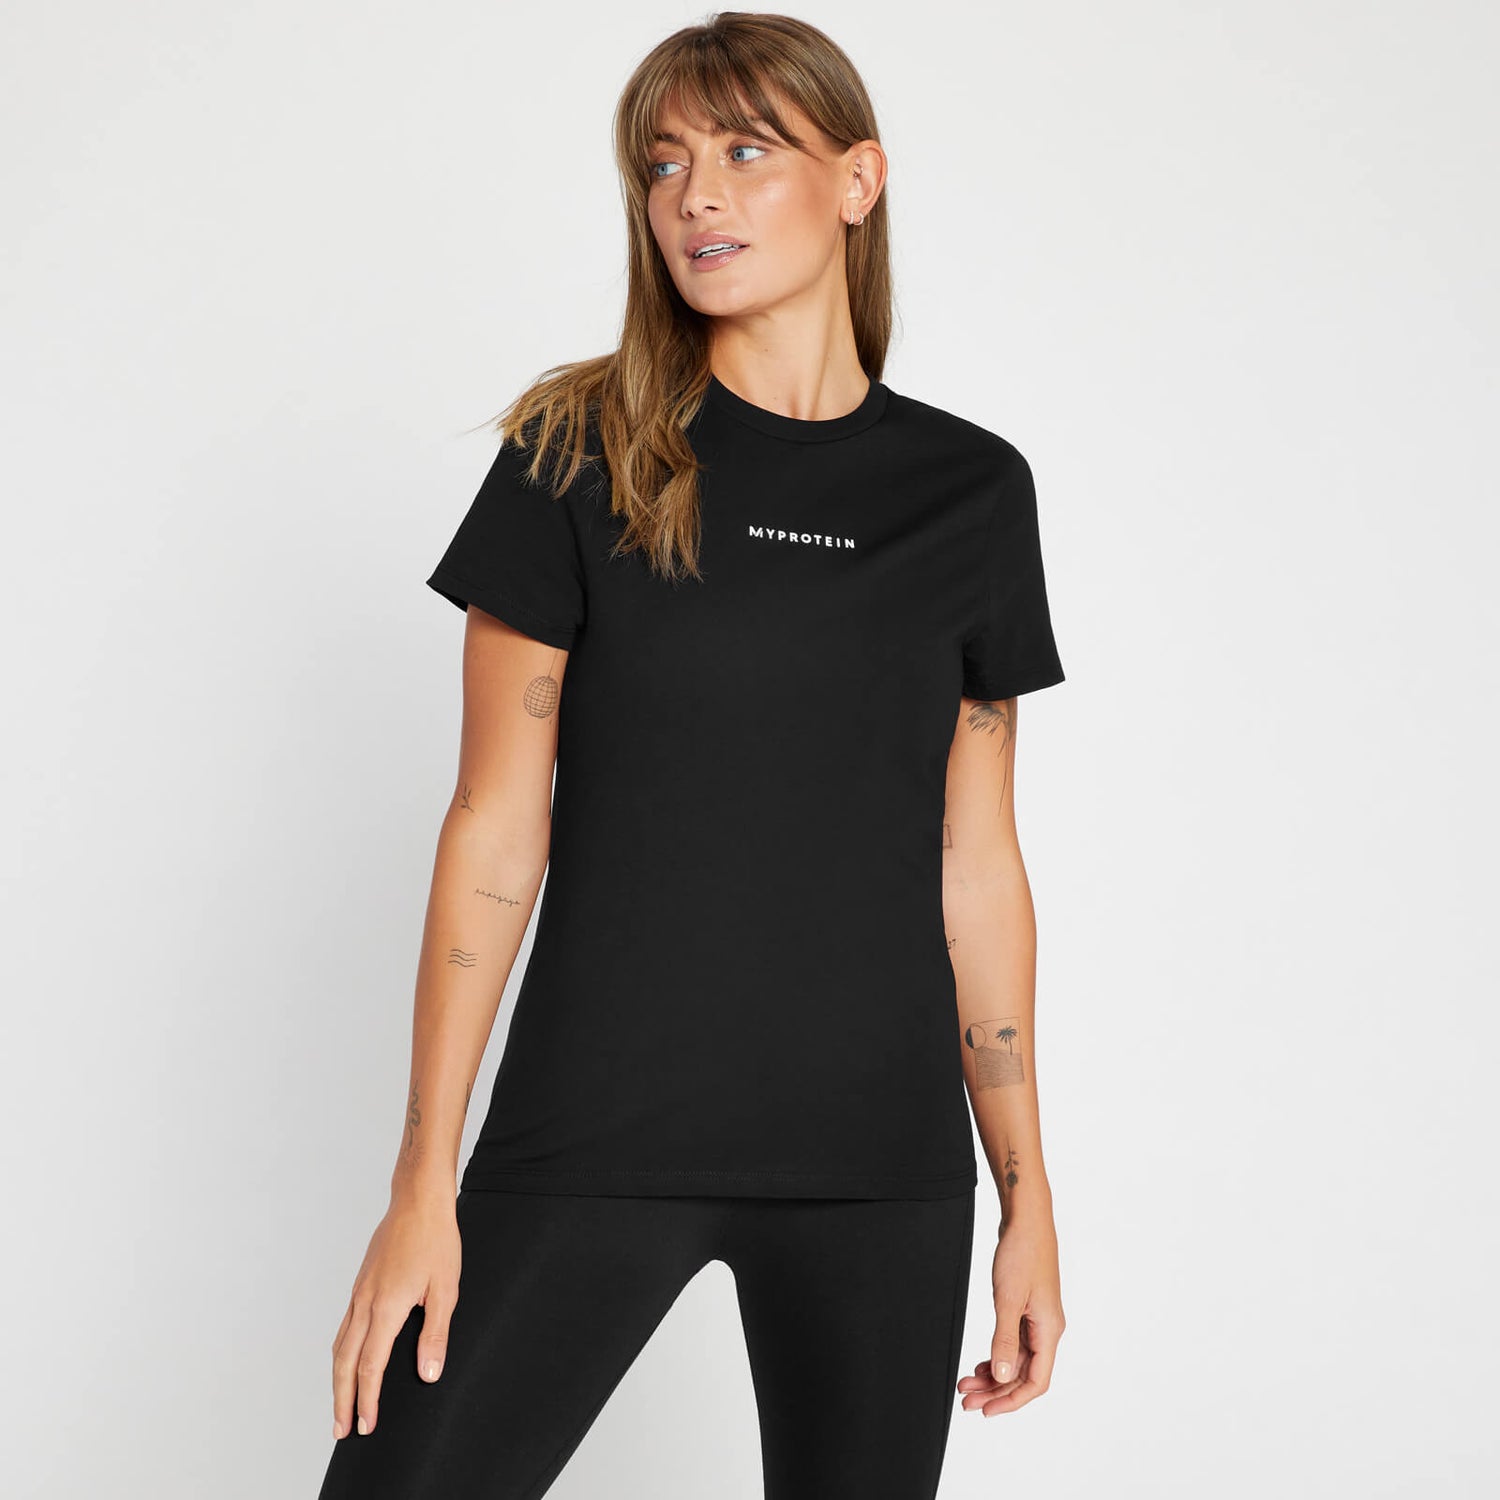 Γυναικεία Νέα Original Μπλούζα (Σύγχρονη) - Μαύρη - XS